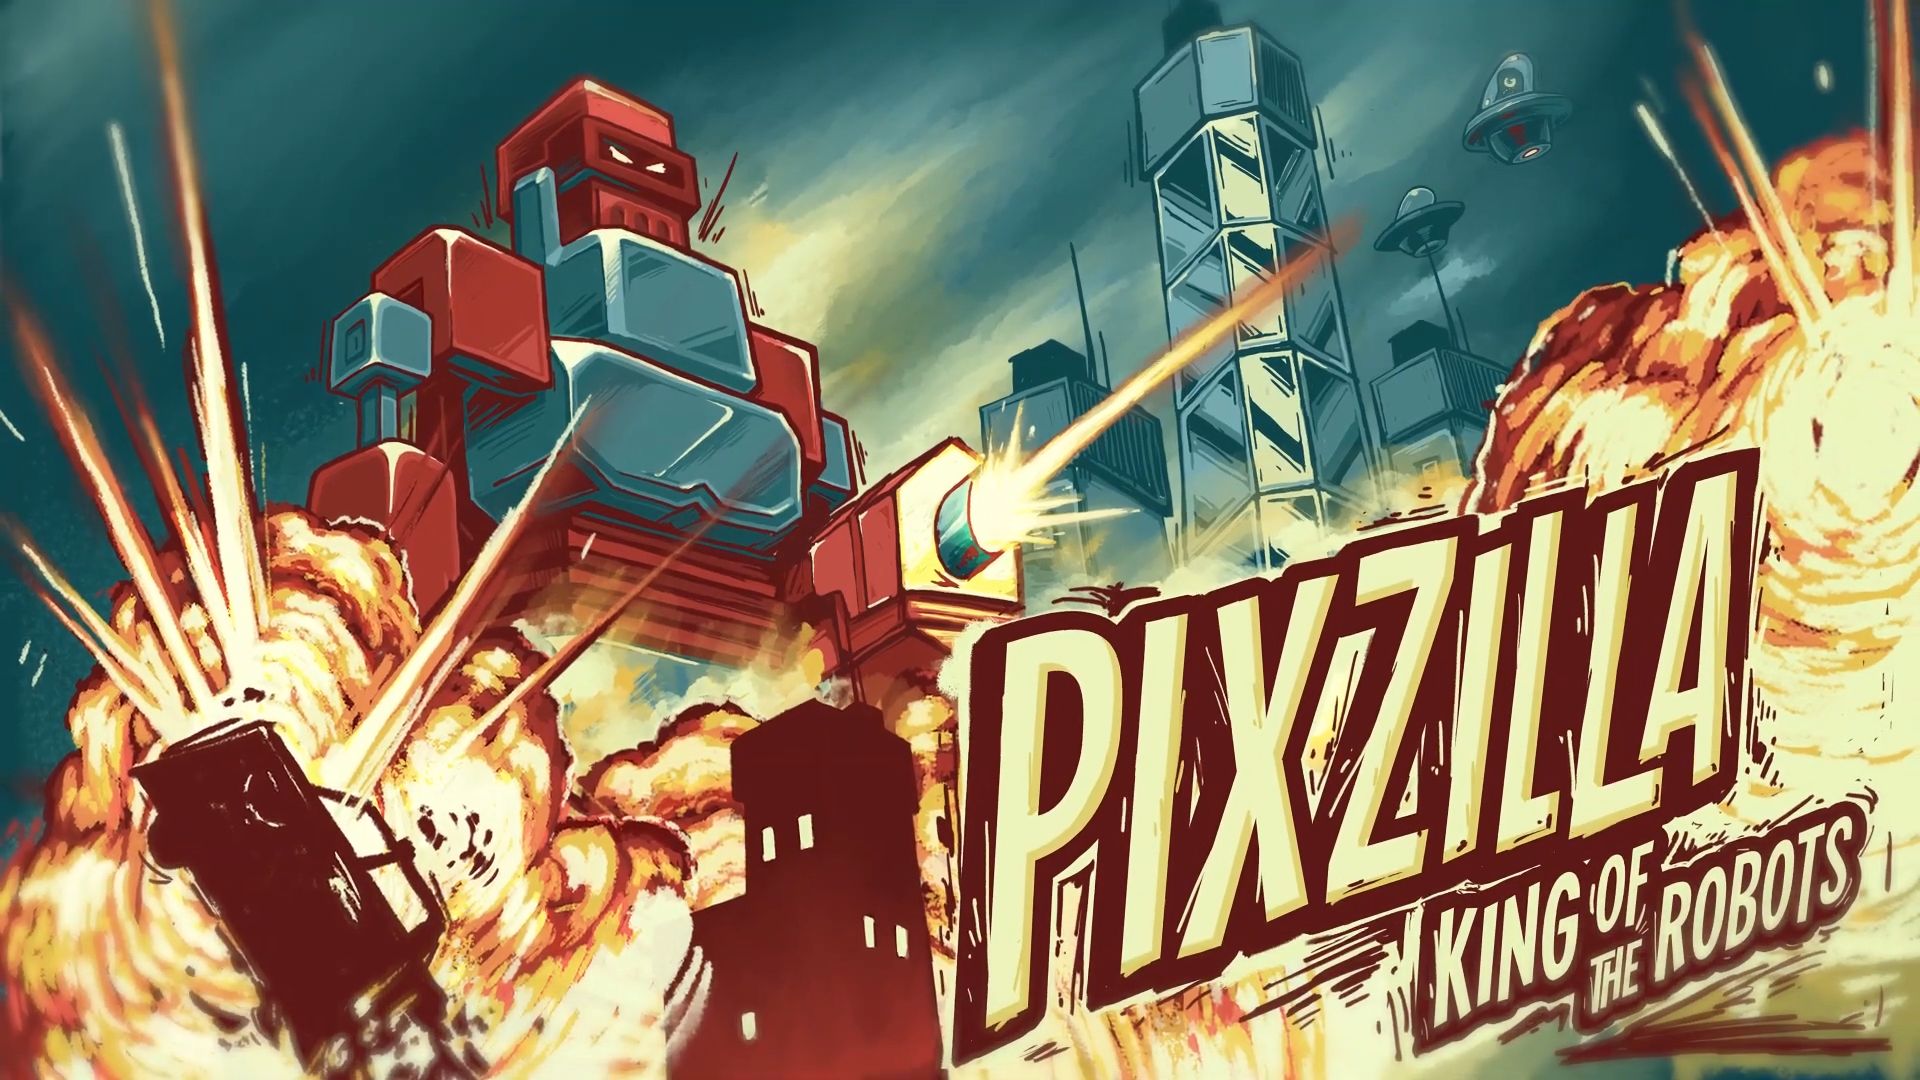 Ladda ner Pixzilla / King of the Robots: Android Shooter spel till mobilen och surfplatta.